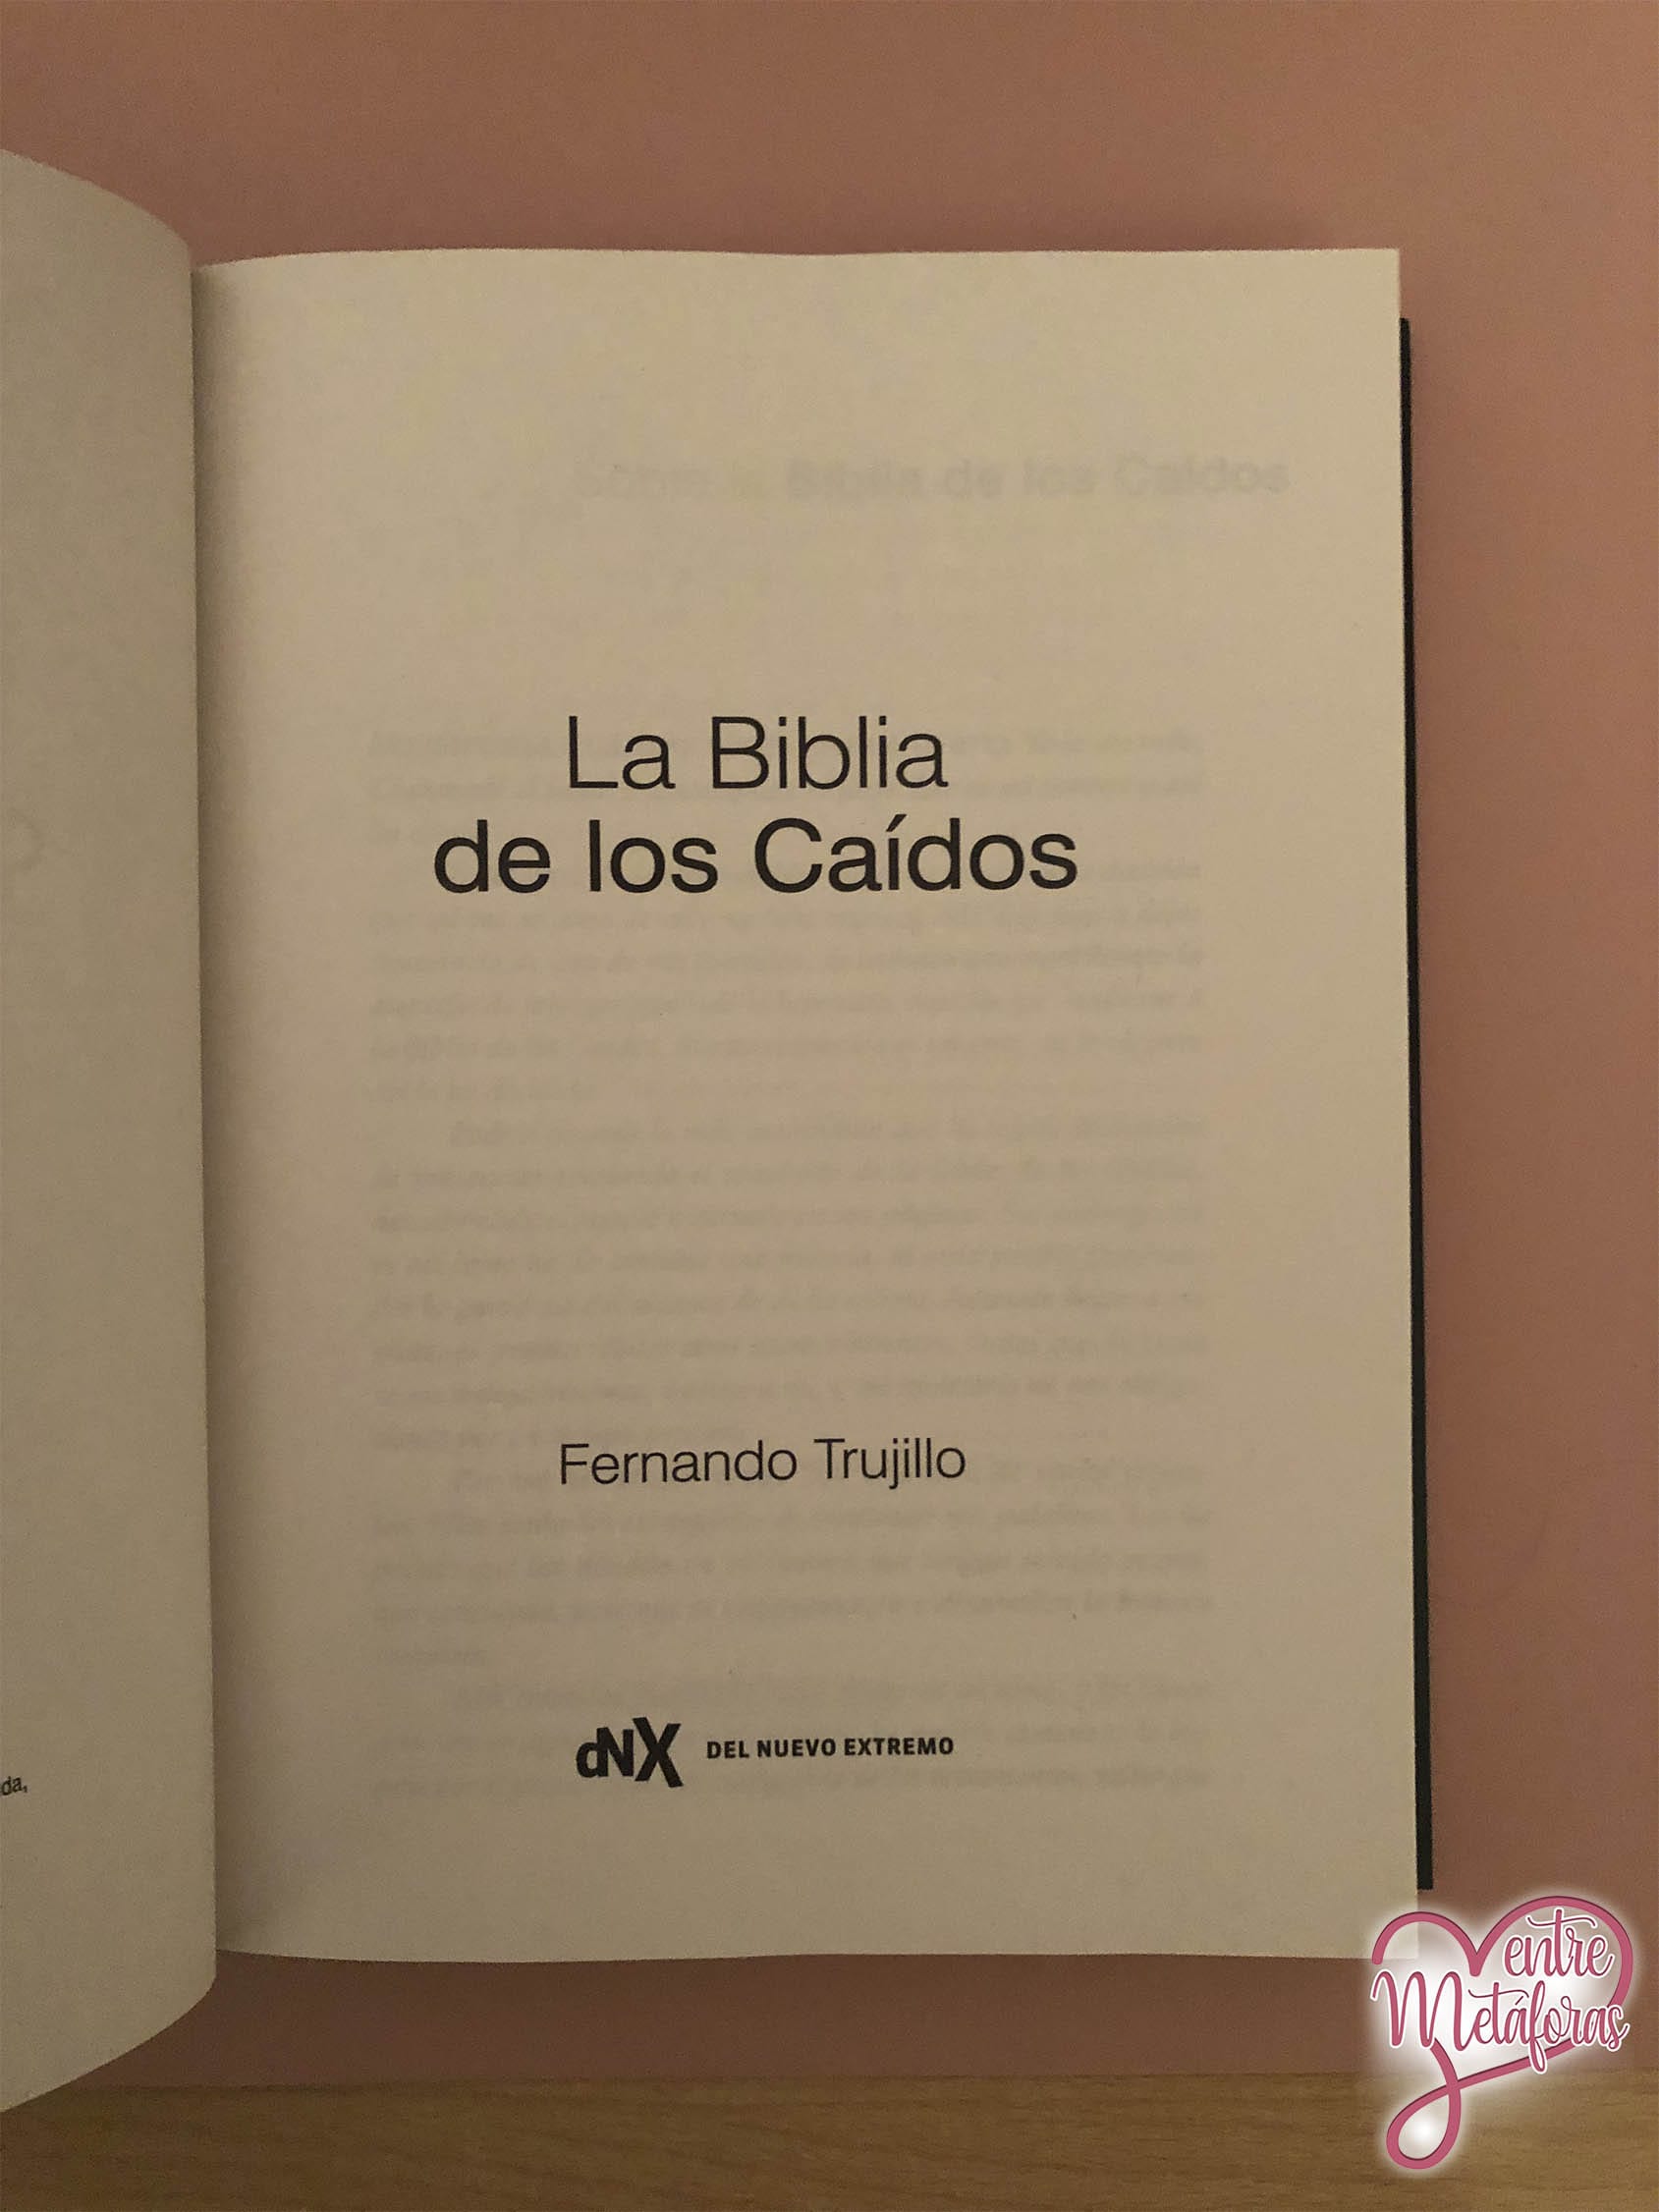 La Biblia de los caídos, de Fernando Trujillo - Reseña